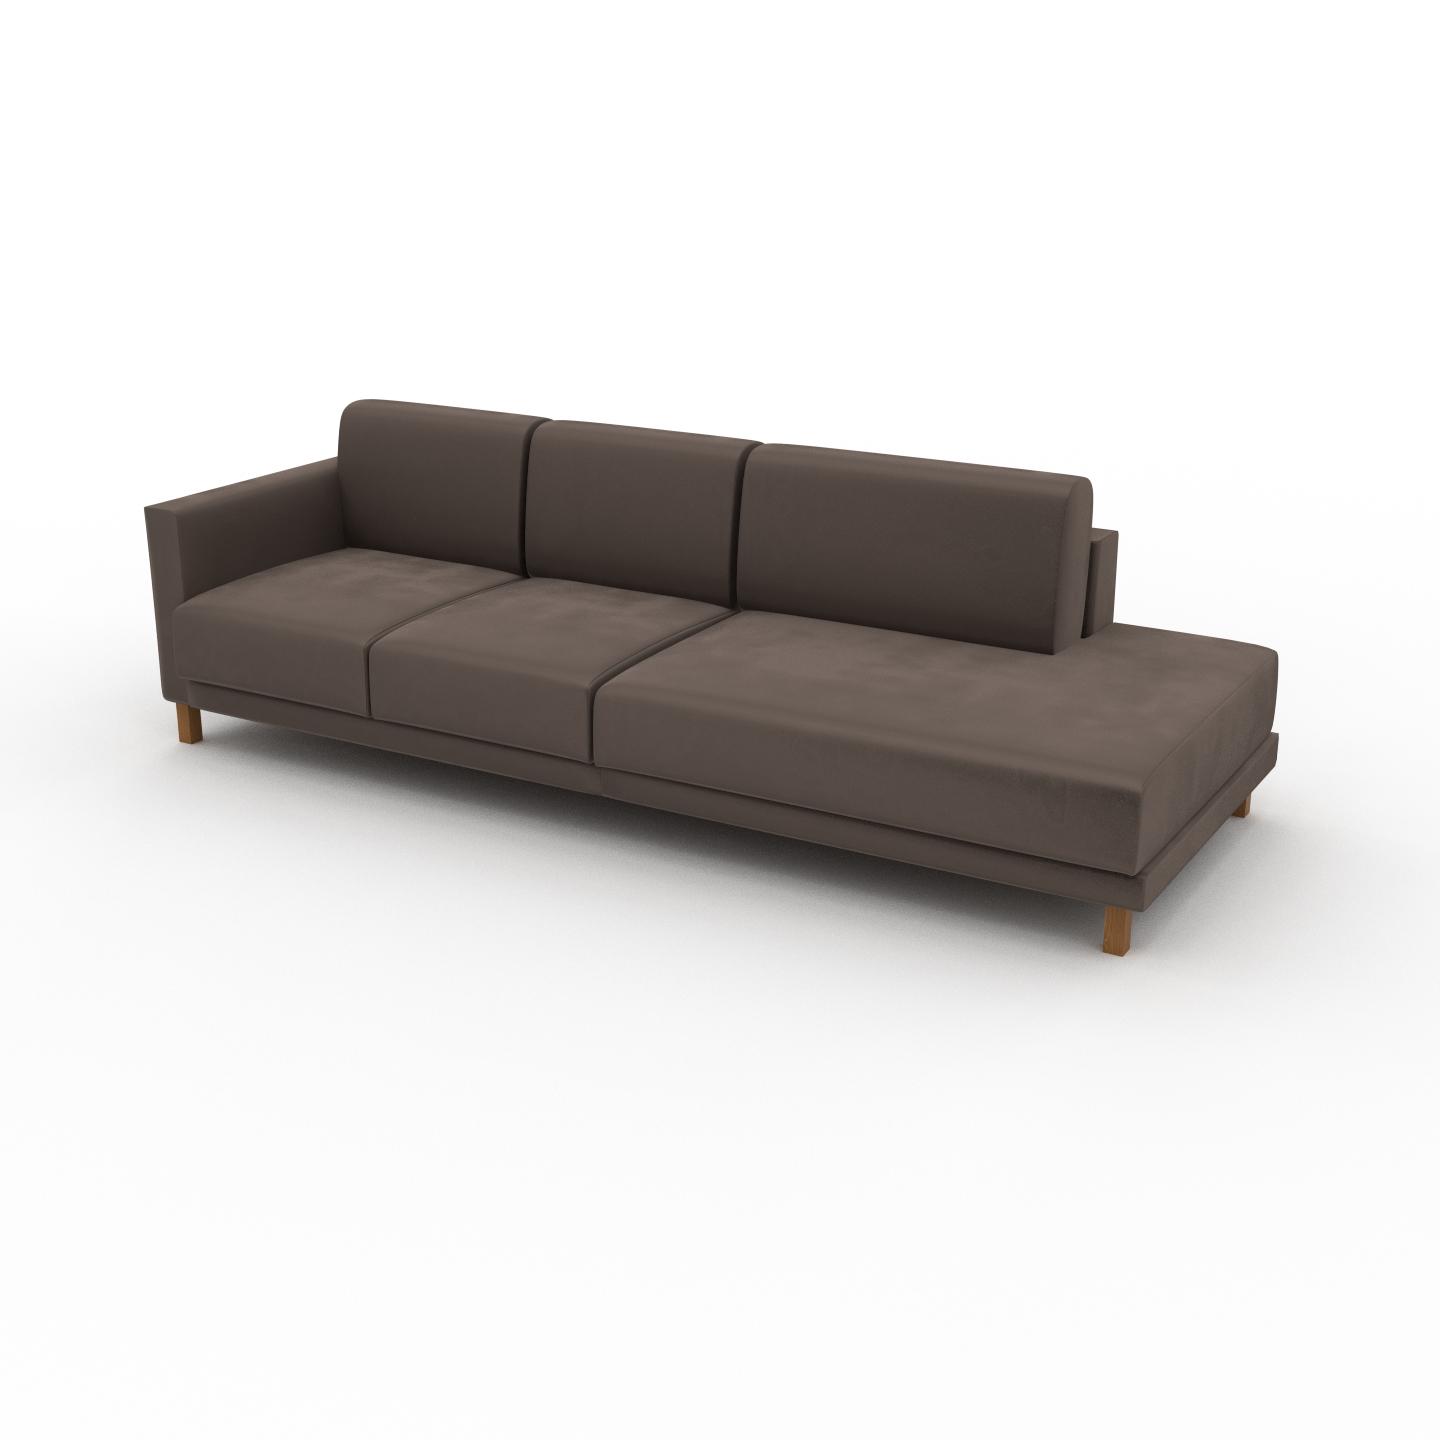 MYCS Sofa Samt Taupegrau - Moderne Designer-Couch: Hochwertige Qualität, einzigartiges Design - 252 x 75 x 98 cm, Komplett anpassbar